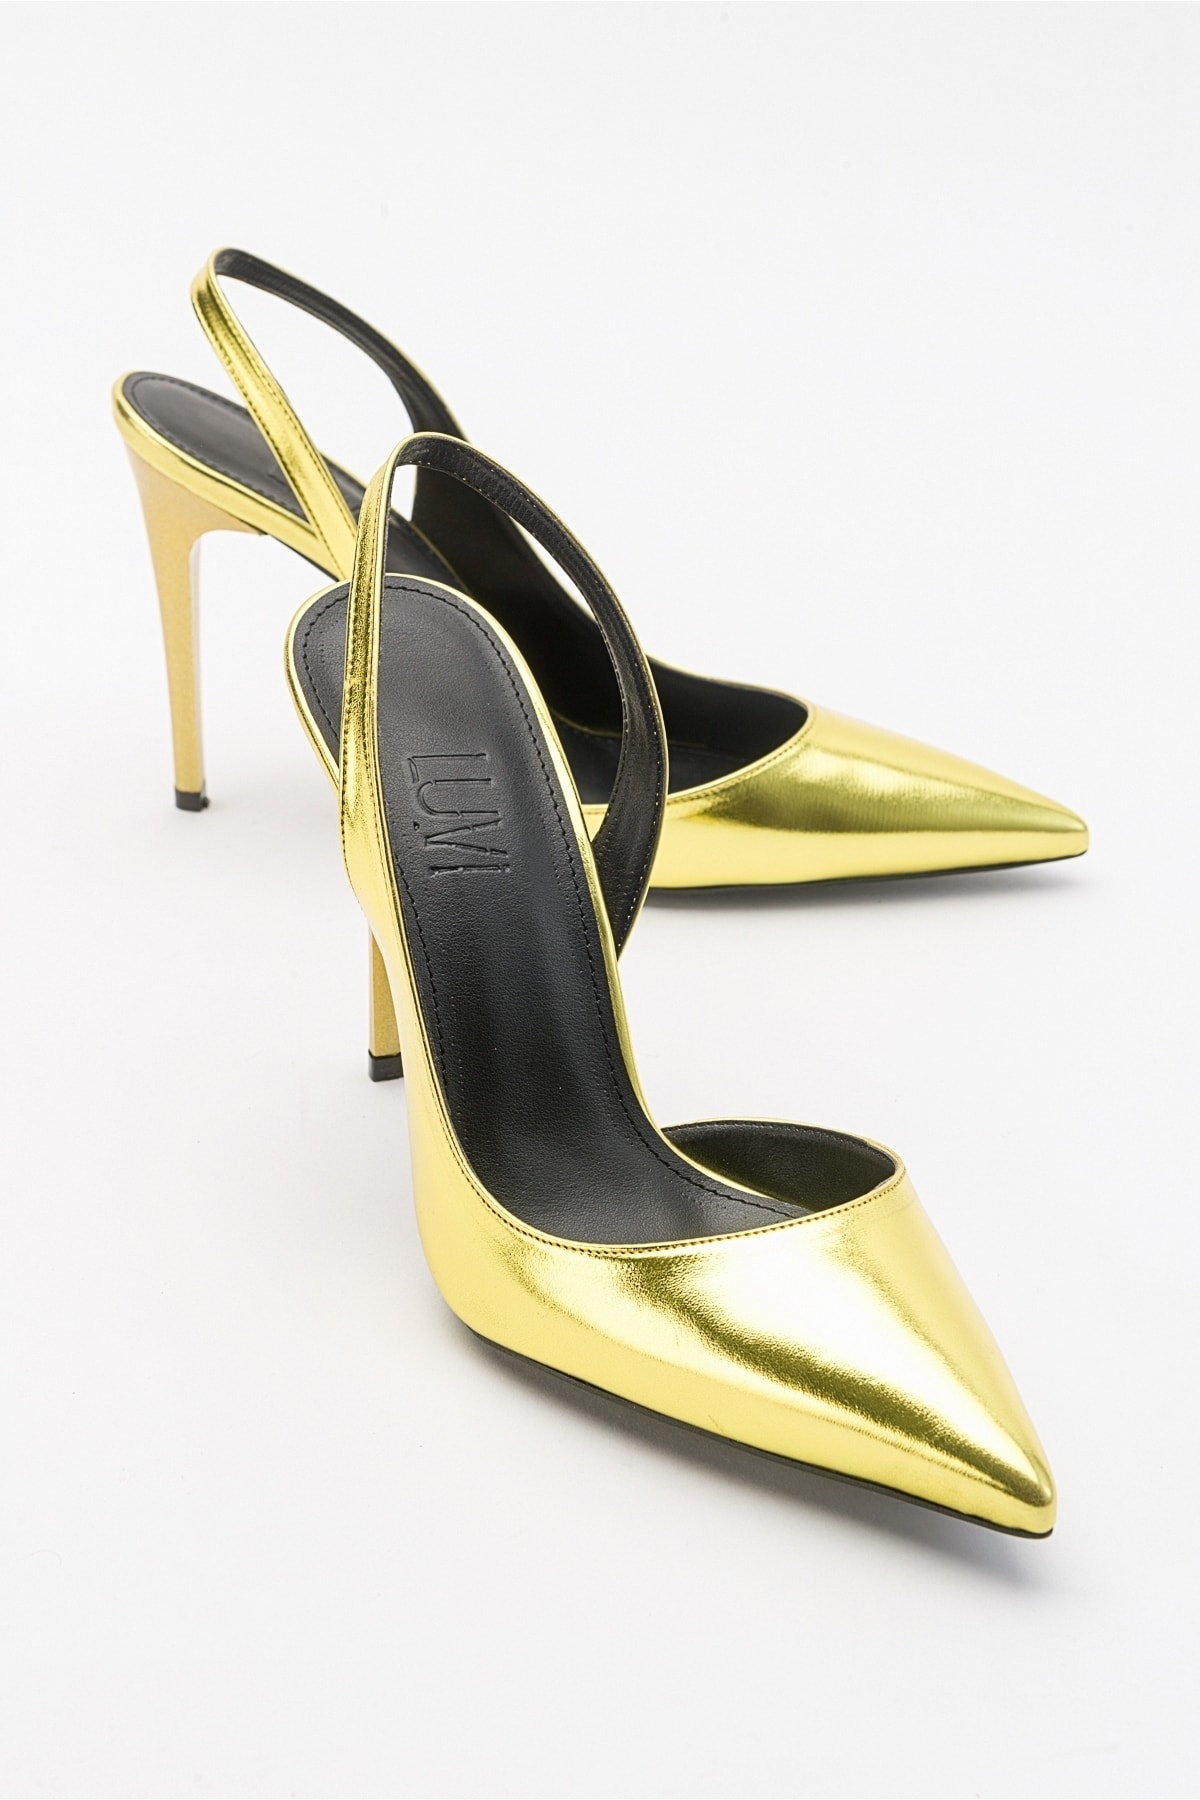 Levně LuviShoes Twine Metallic Yellow Women's Heeled Shoes